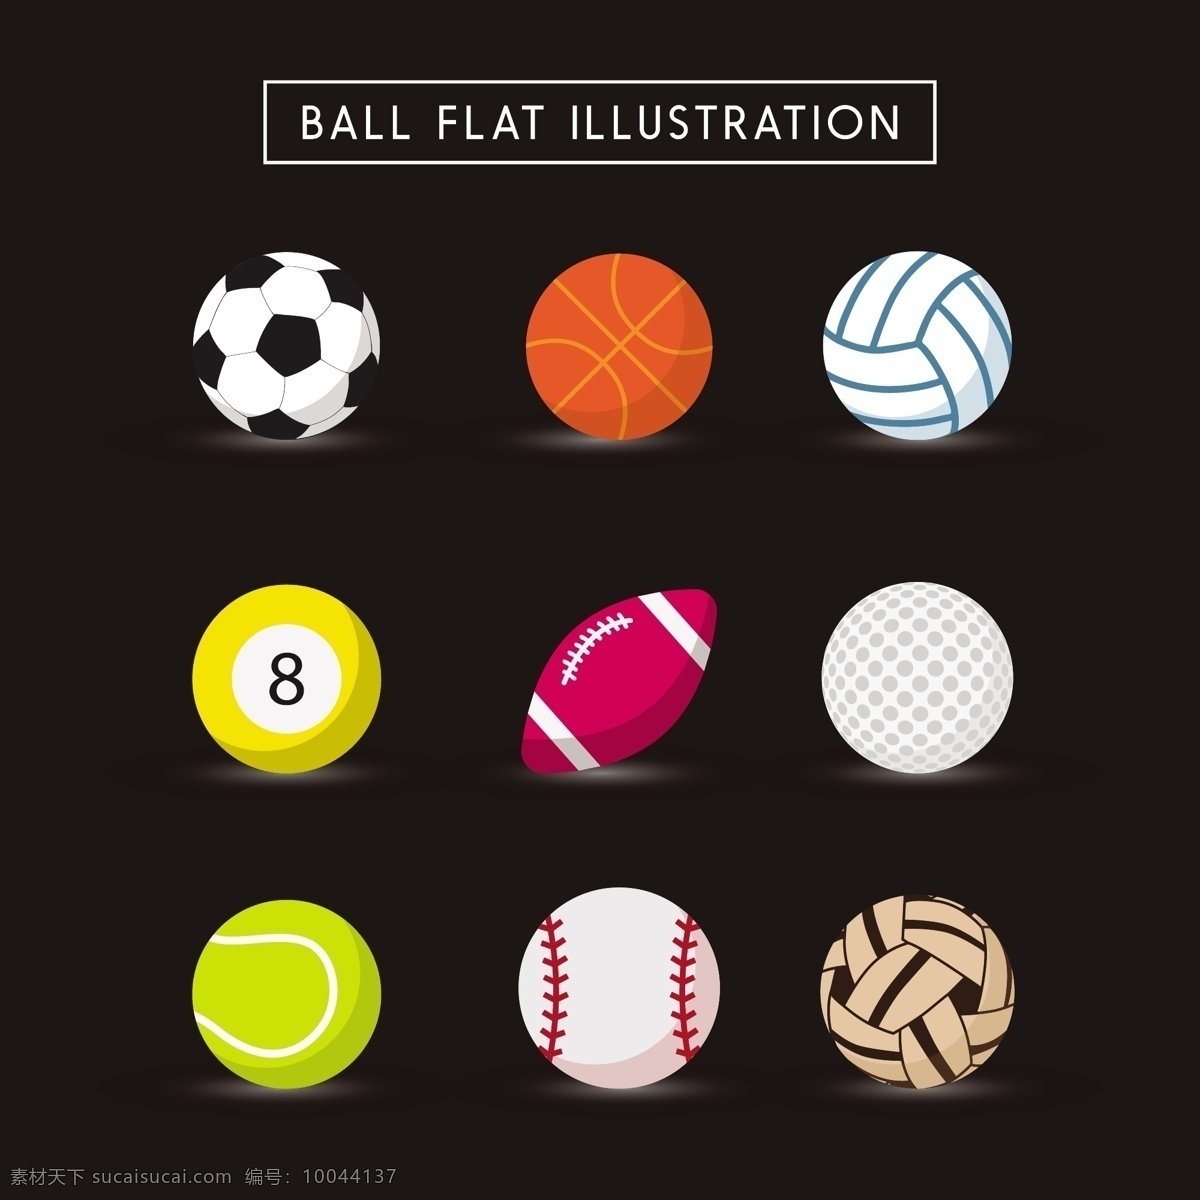 各种 球类 矢量图 广告背景 广告 背景 背景素材 矢量 黑色背景 底纹 足球 篮球 桌球 高尔夫球 草球 排球 橄榄球